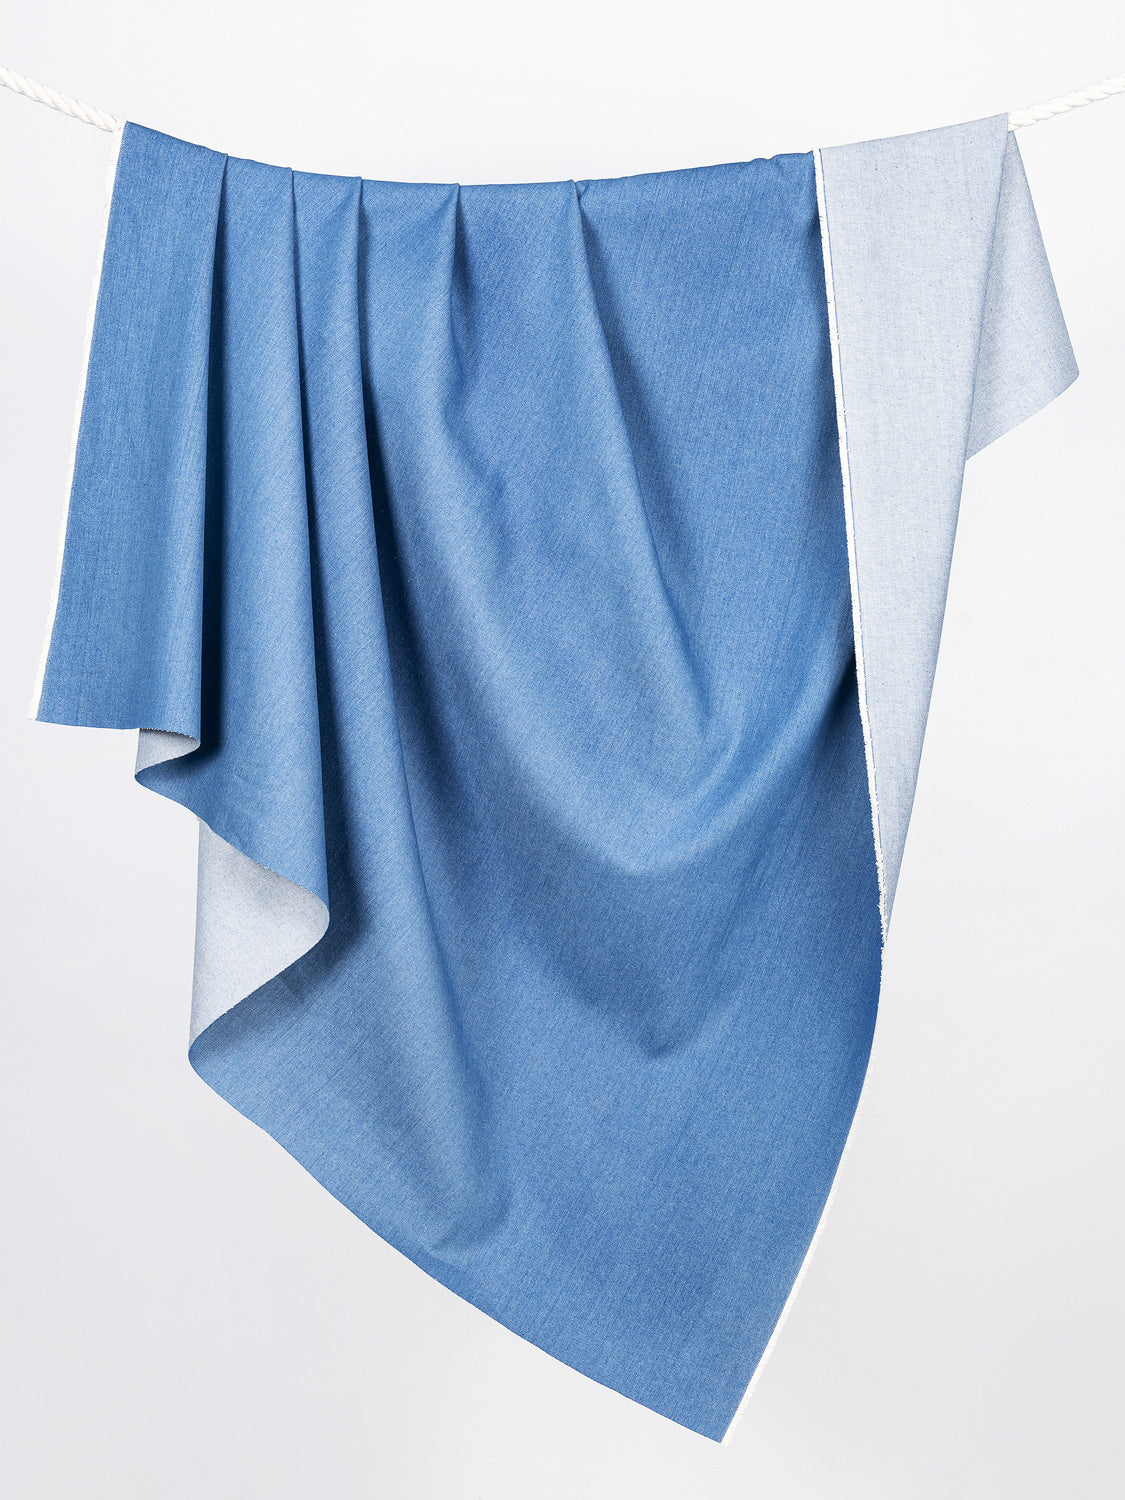 13.5 oz Non-Stretch Denim - 90's Blue | Core Fabrics